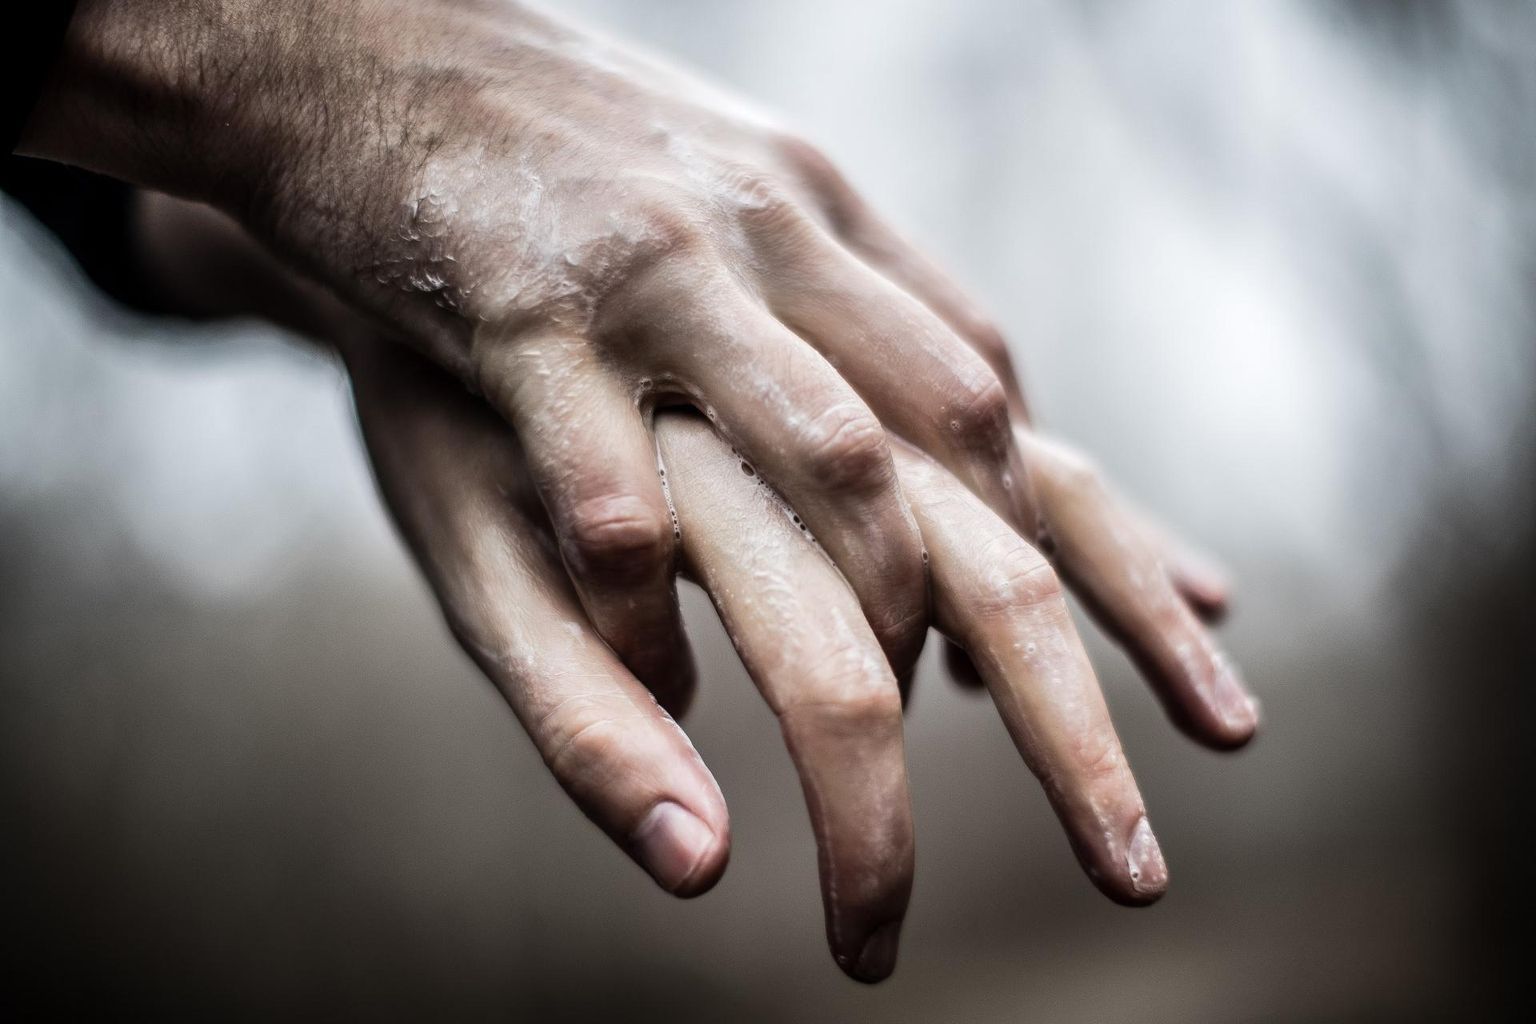 Koroonaviiruse leviku takistamiseks tuleb käsi tuleb pesta tihti ja 40–60 sekundi jooksul. Kätepesuks tuleb kasutada sooja vett ja seepi; avalikes kohtades alkoholipõhist desovahendit.